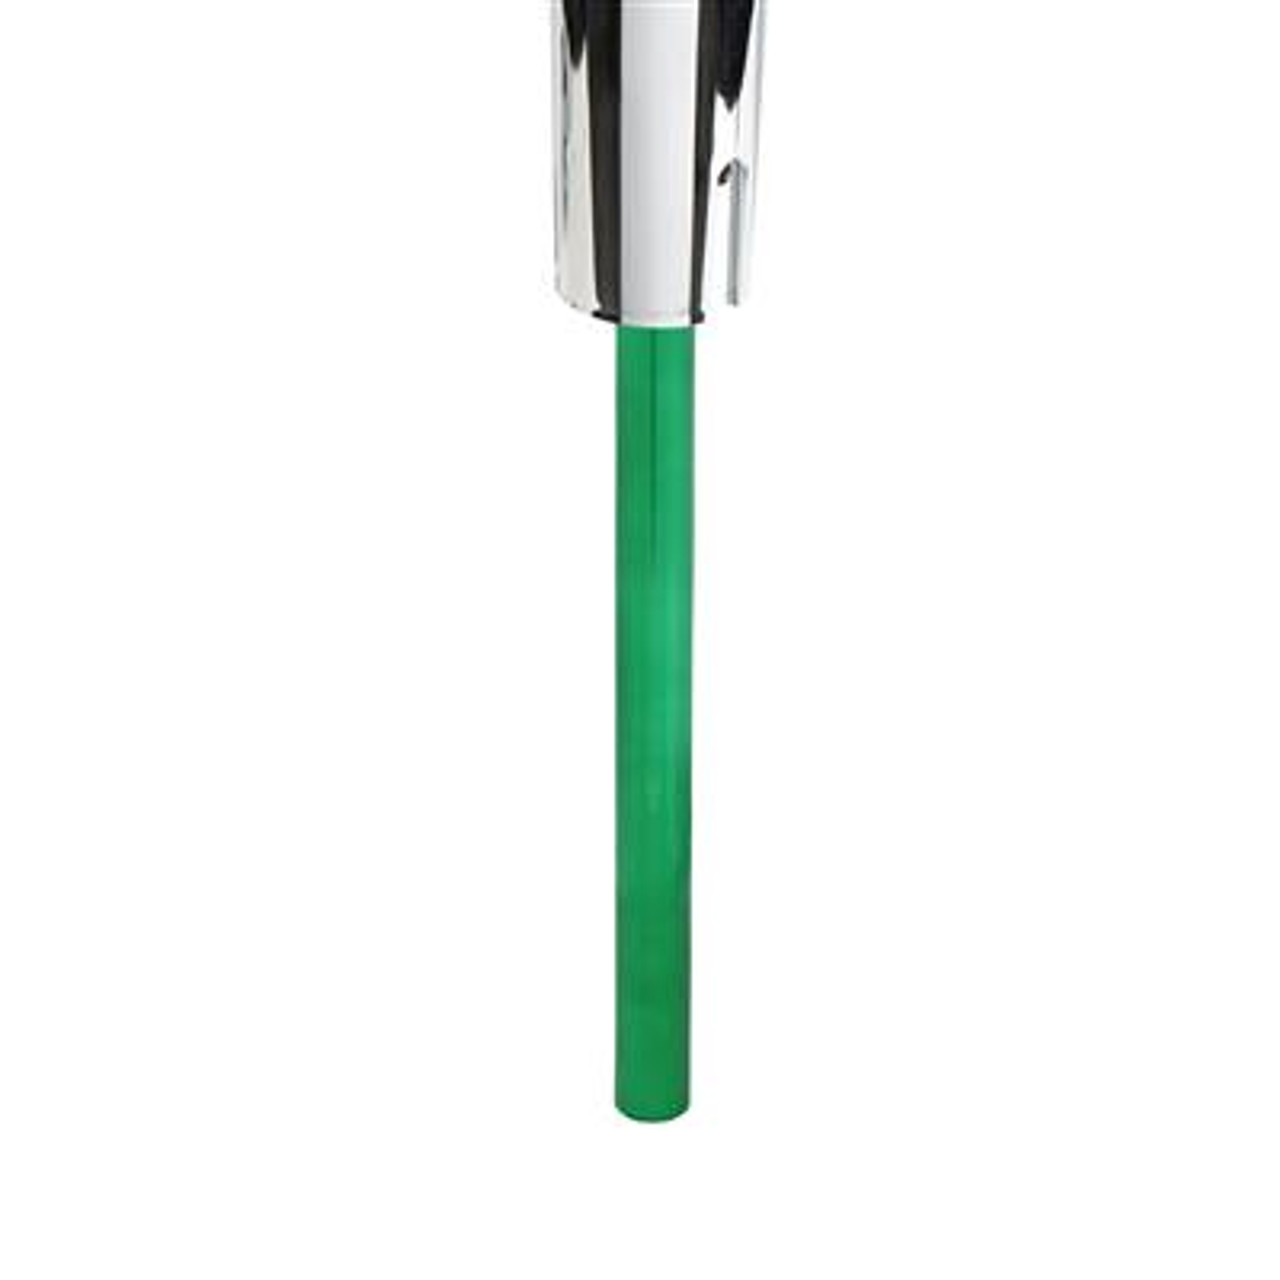 18" Shifter Shaft Extension - Emerald Green